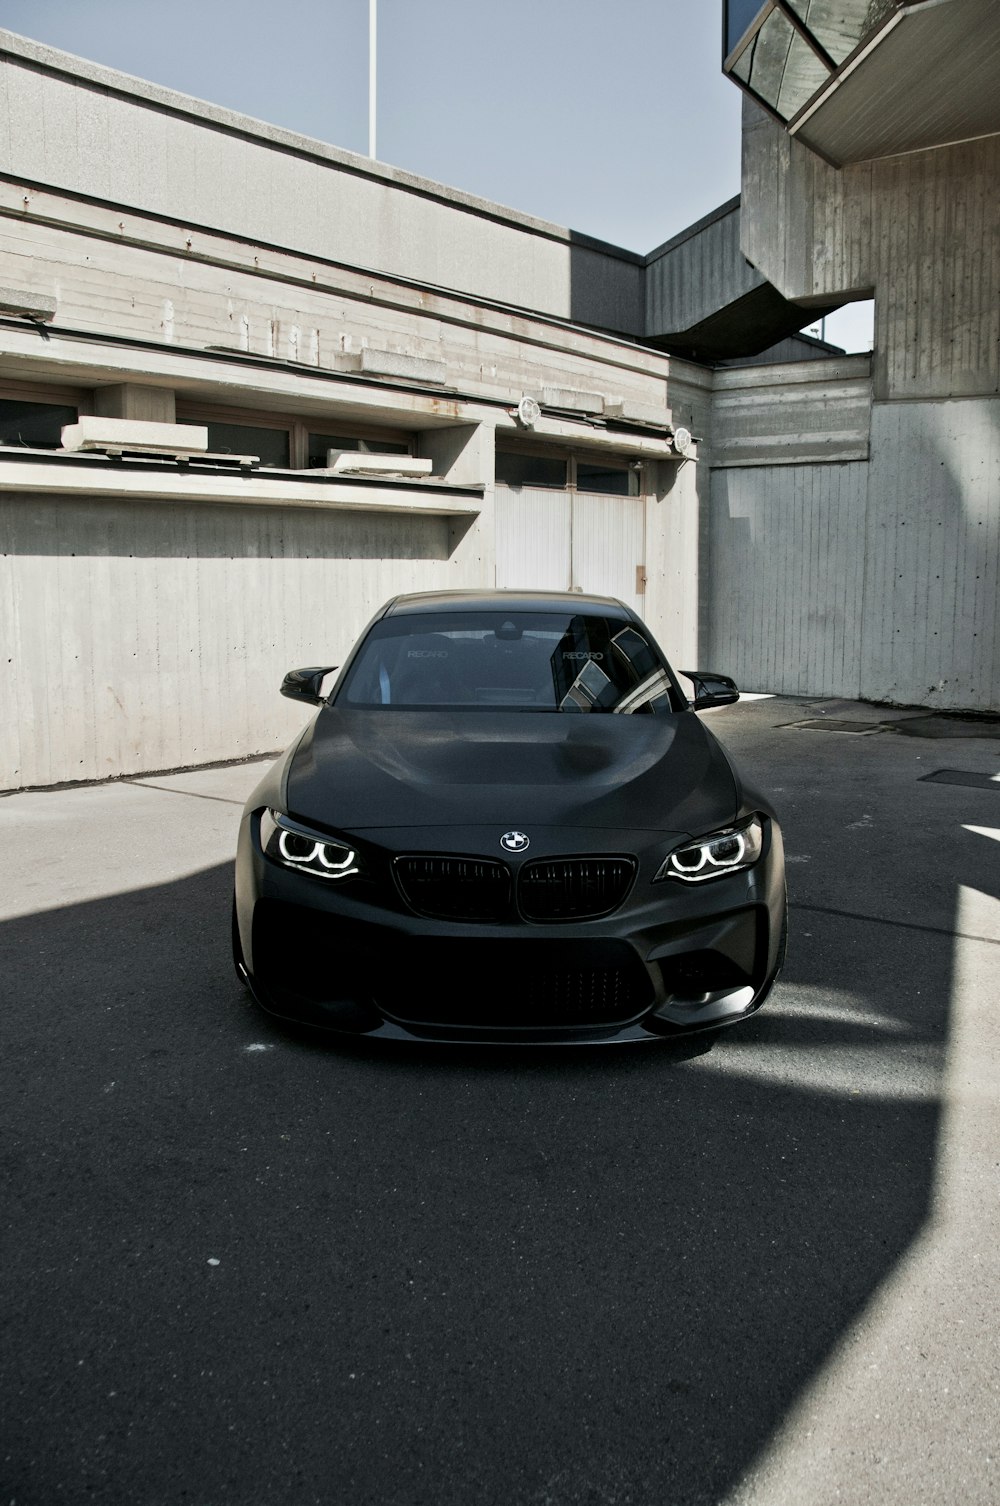 Schwarzes BMW-Auto tagsüber auf grauem Betonboden geparkt